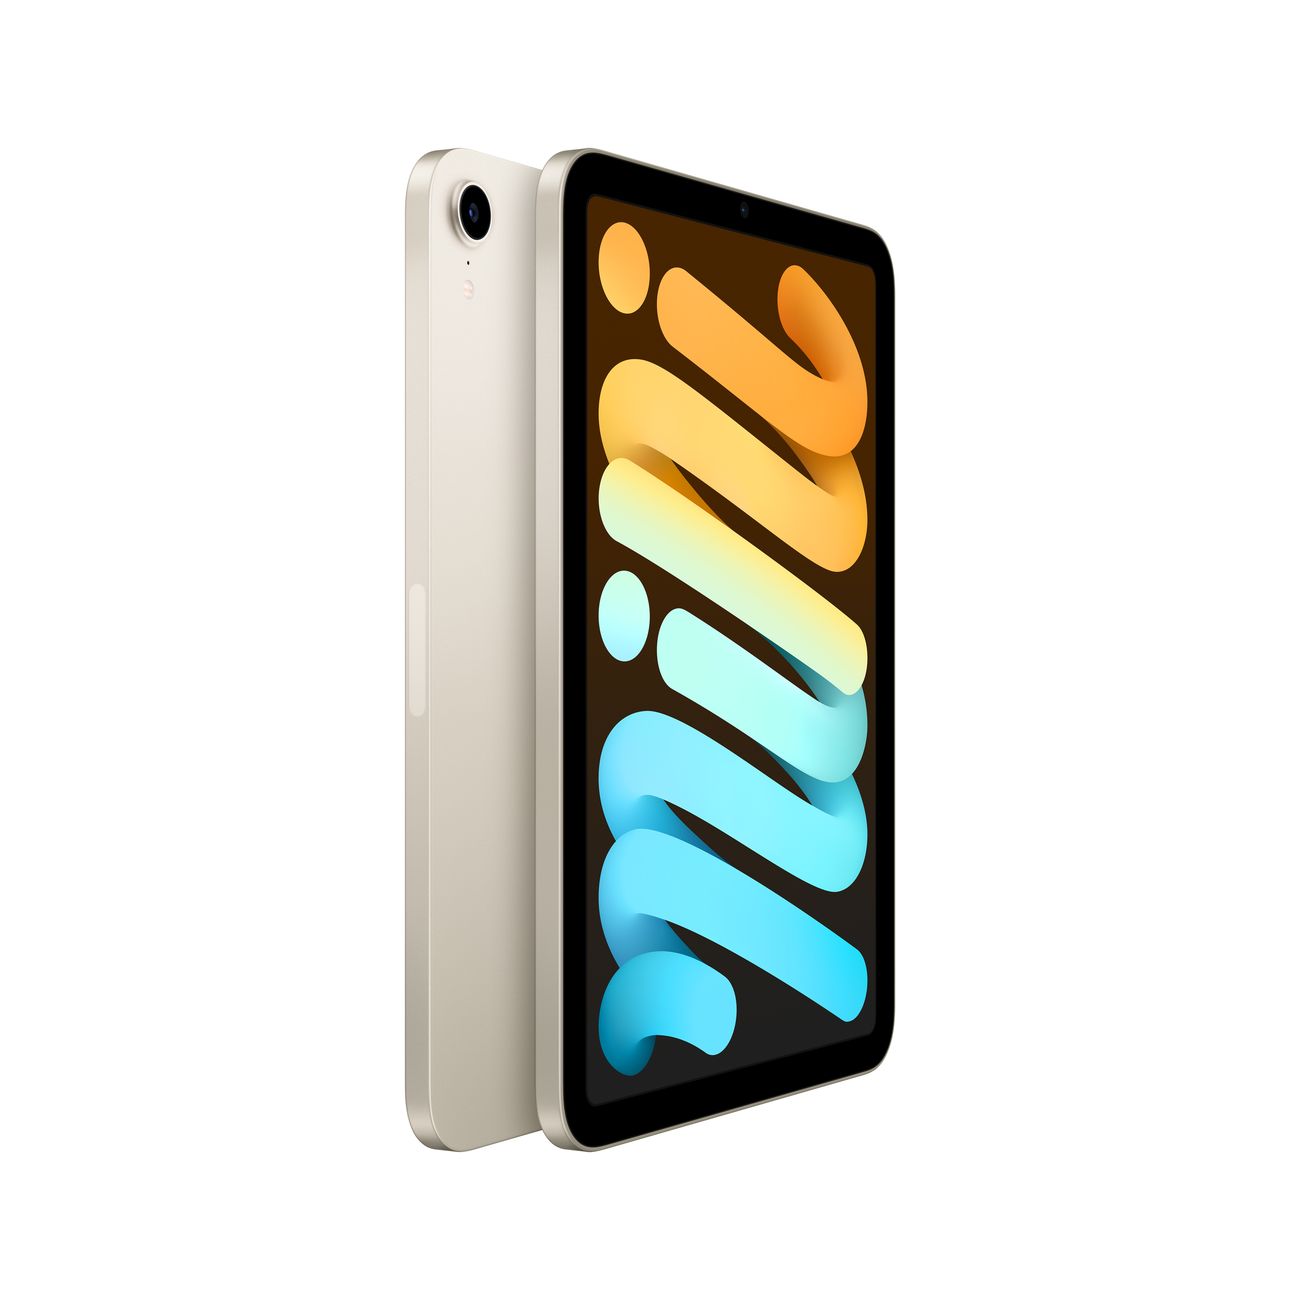 Купить планшет apple ipad mini wi-fi+cell 64gb starlight (mk8c3) Apple iPad mini в официальном магазине Apple, Samsung, Xiaomi. iPixel.ru Купить, заказ, кредит, рассрочка, отзывы,  характеристики, цена,  фотографии, в подарок.